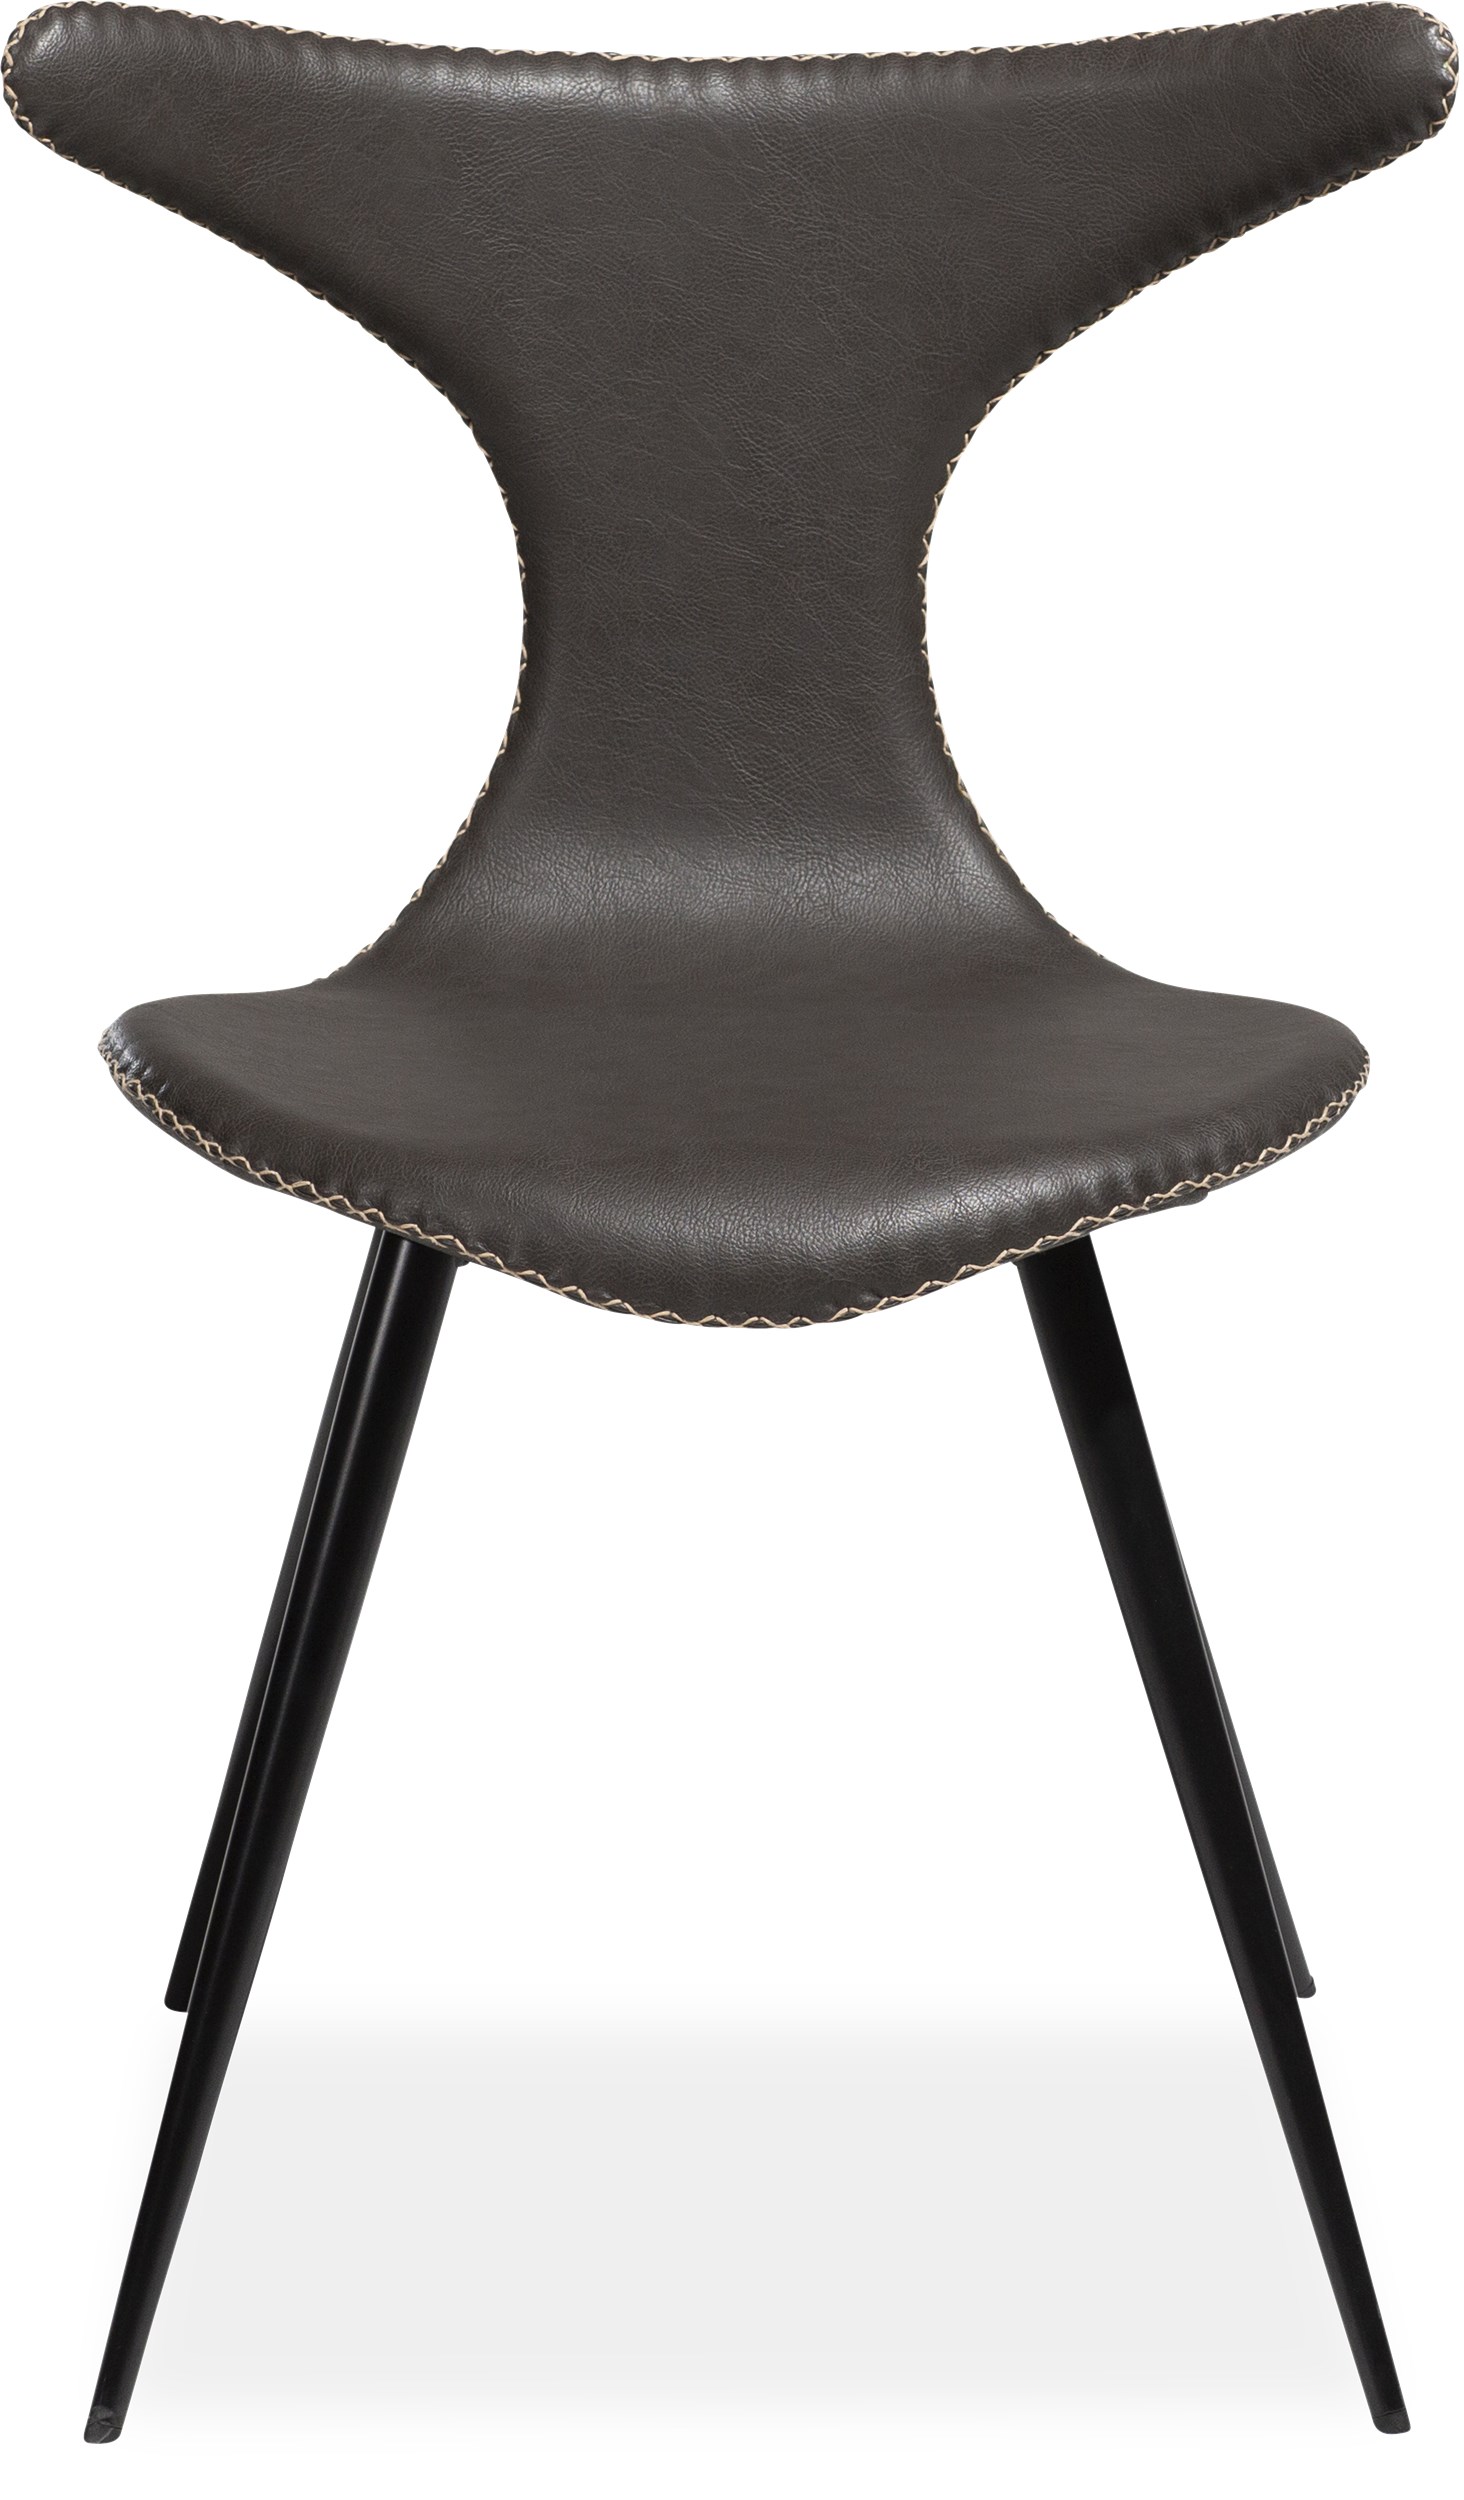 Dolphin Spisebordsstol - Sæde i vintage grå kunstlæder, med kontrastsyninger og runde ben i sortlakeret metal